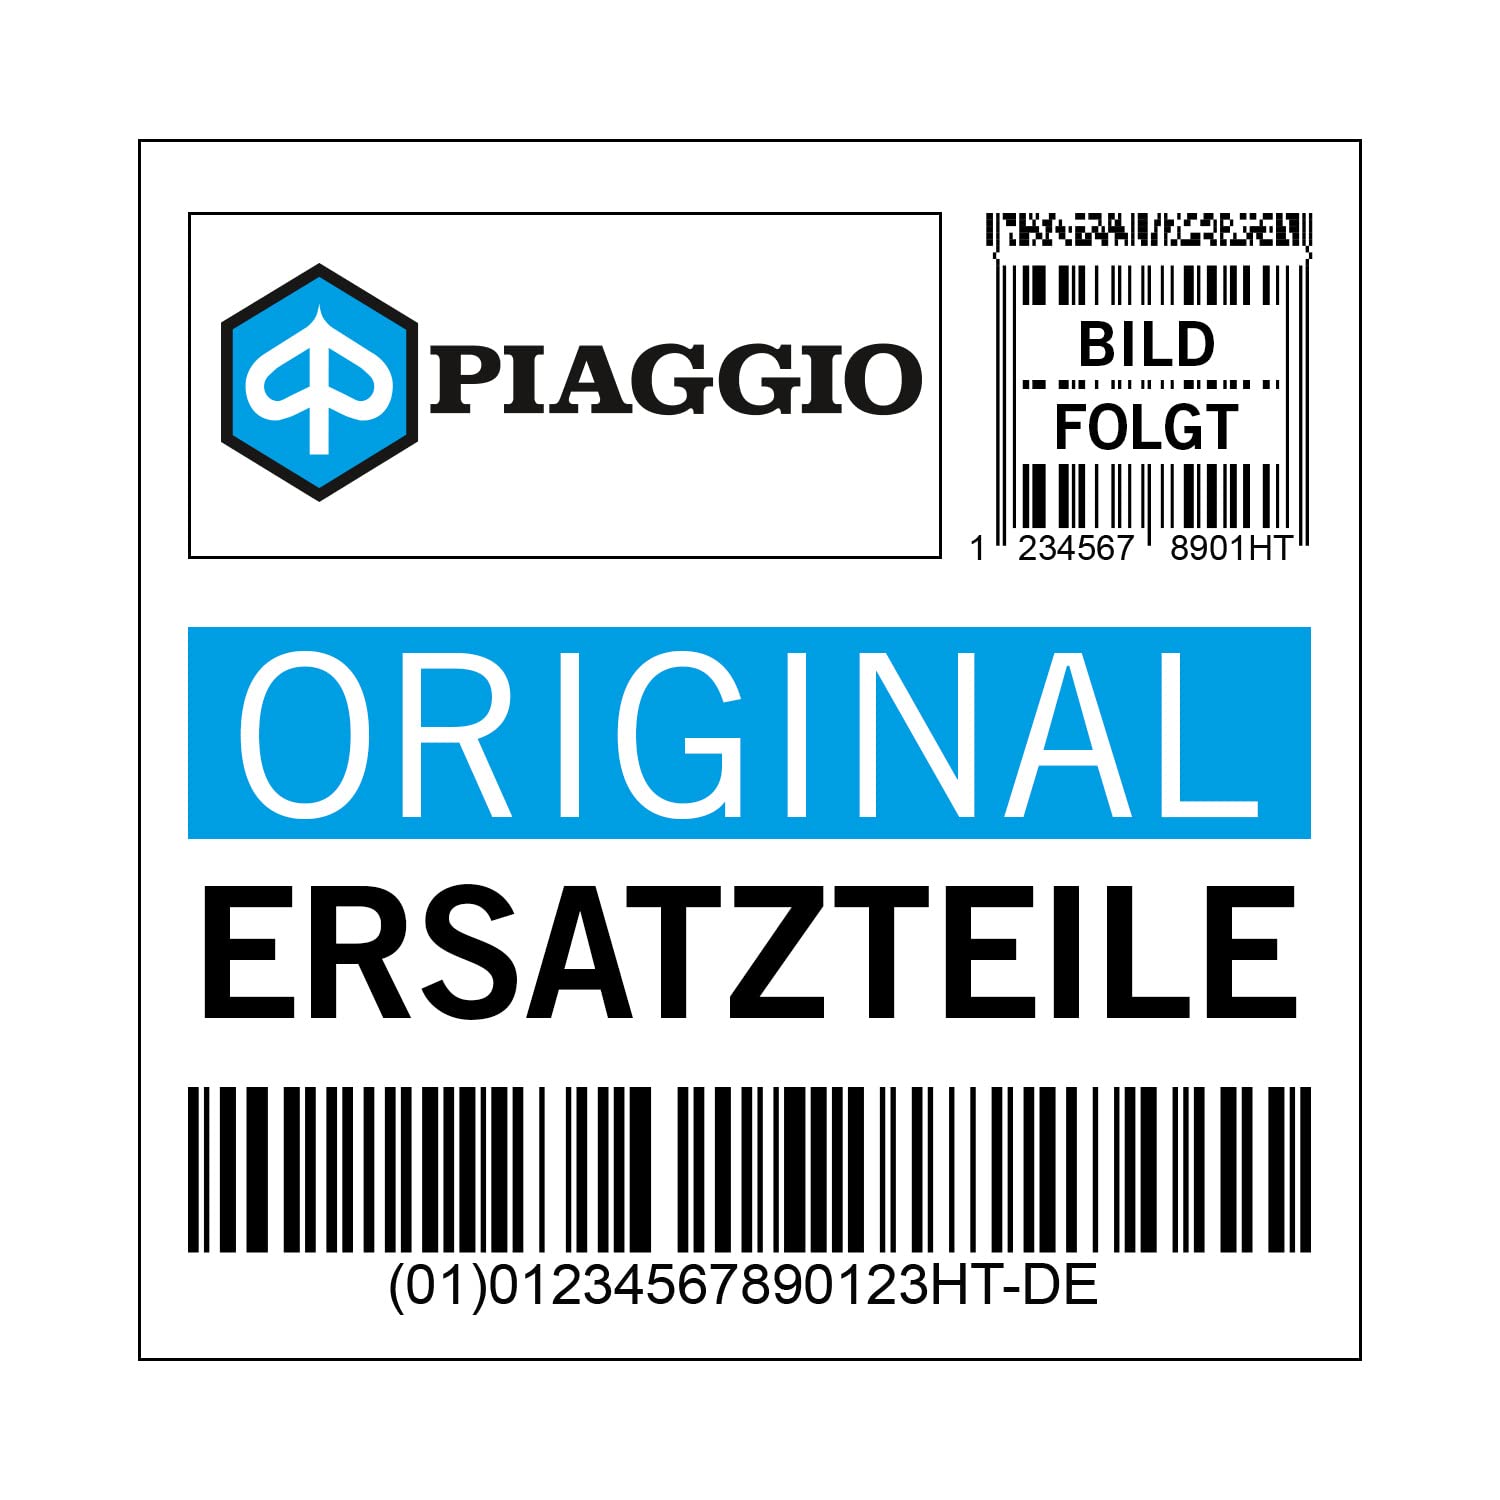 Halterung Piaggio Anschlaggummi Ölfilter für 500 ccm, 583584 von Maxtuned